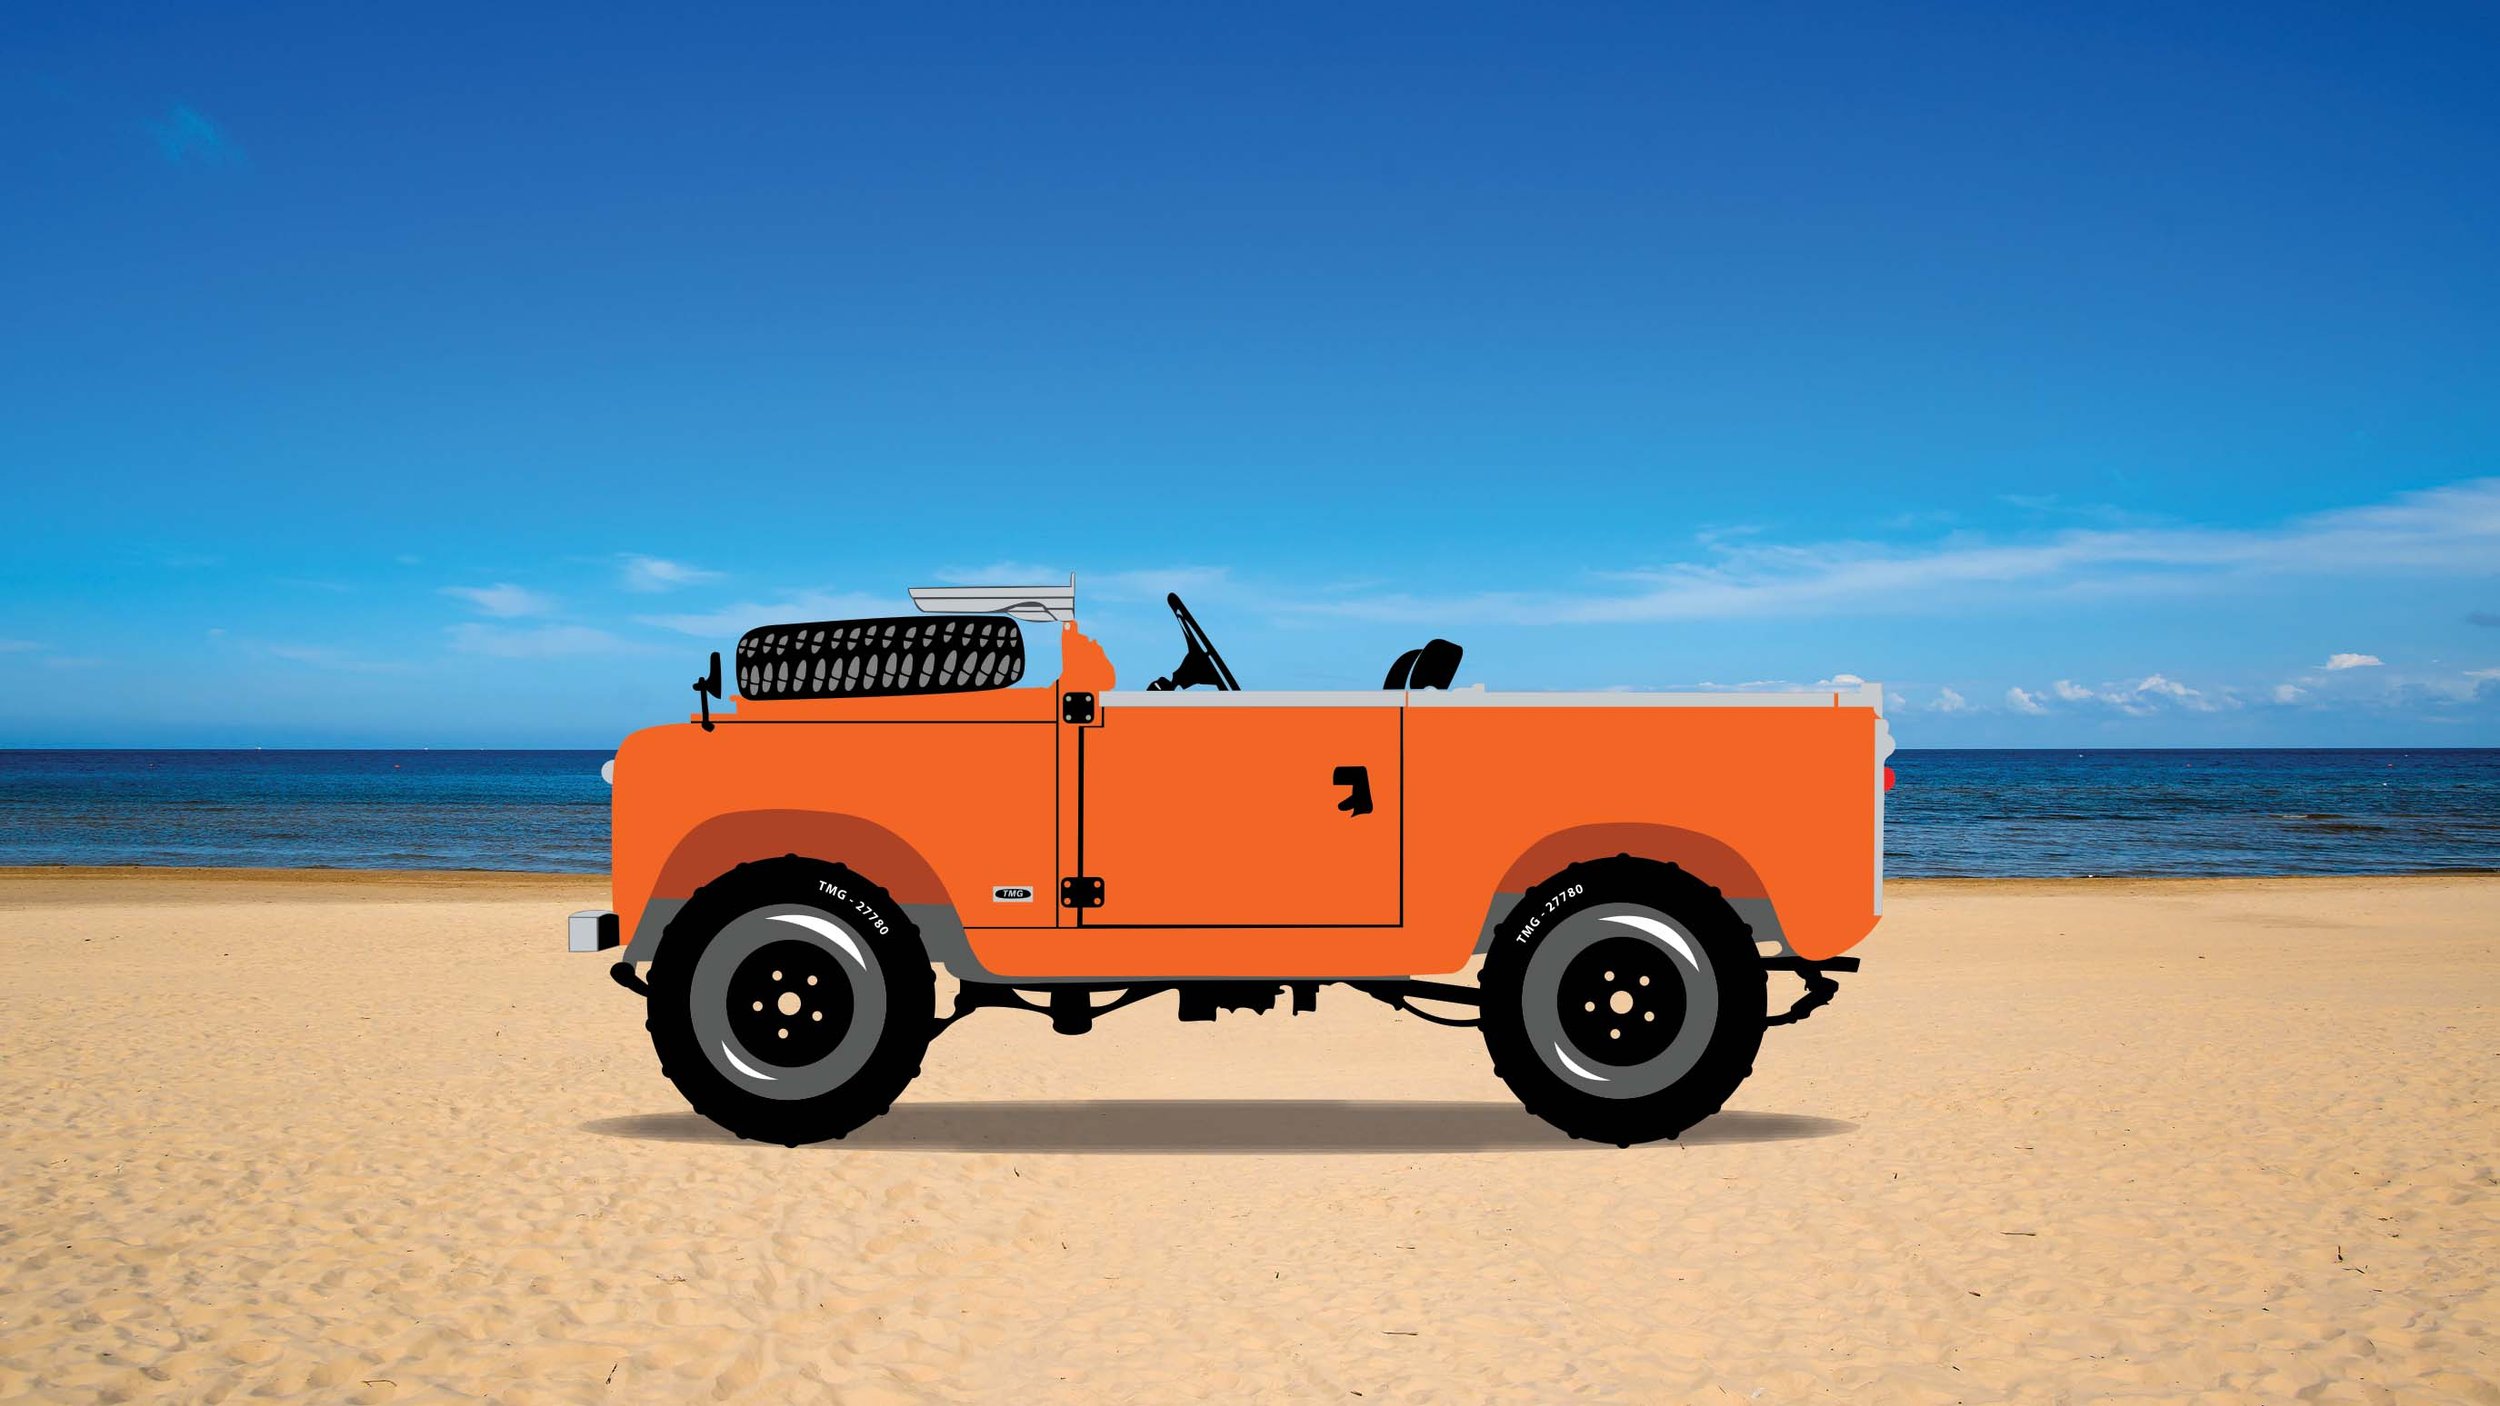 TMG - 27780 - Orange Land Rover Beach Portrait - Challenge Orange.jpg